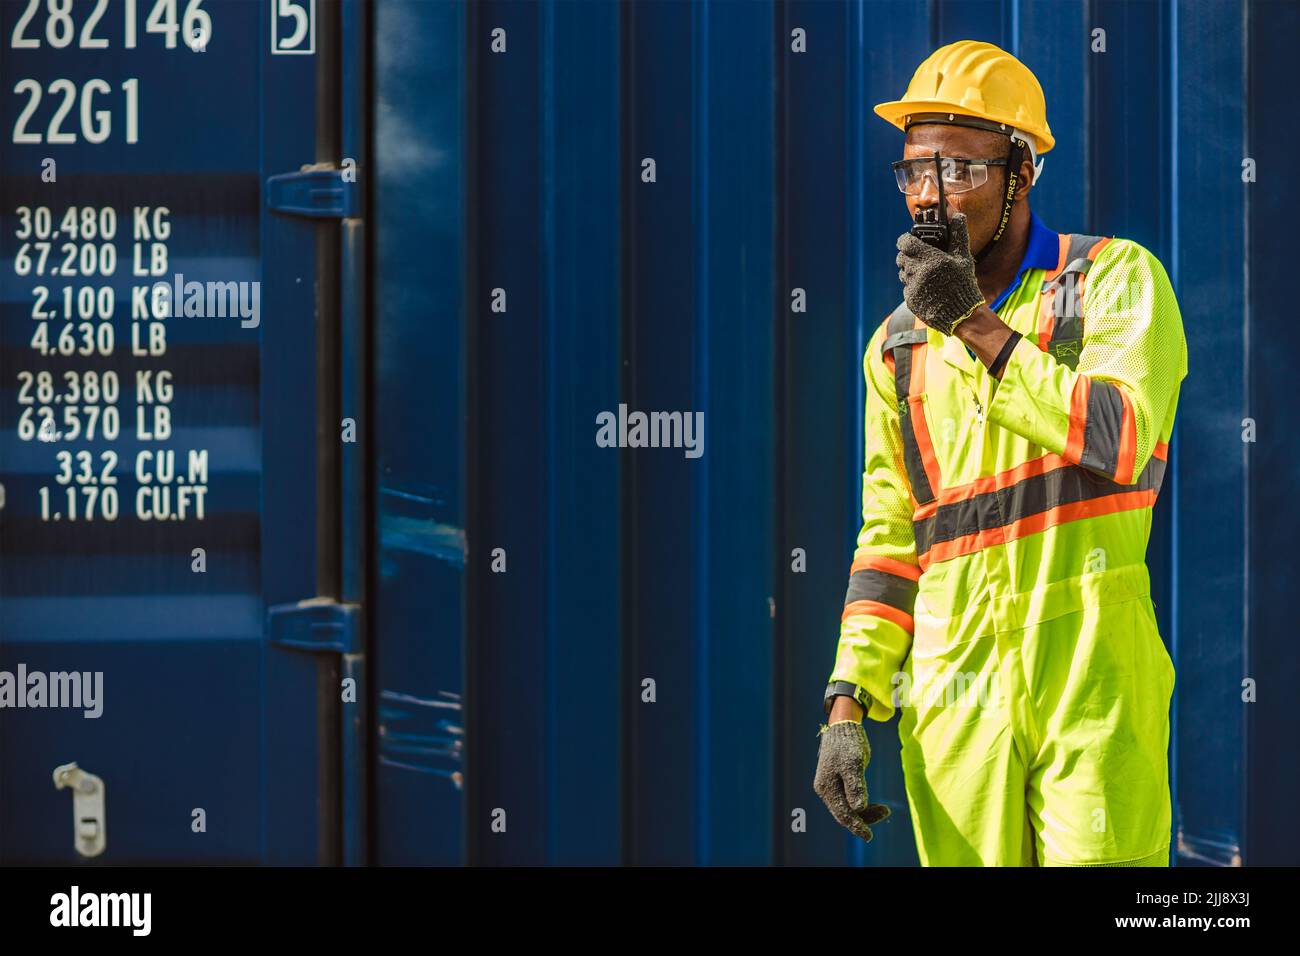 Un travailleur masculin d'Afrique noire travaille comme gestionnaire de fret portuaire en utilisant un conteneur de chargement de contrôle radio dans l'industrie logistique. Banque D'Images